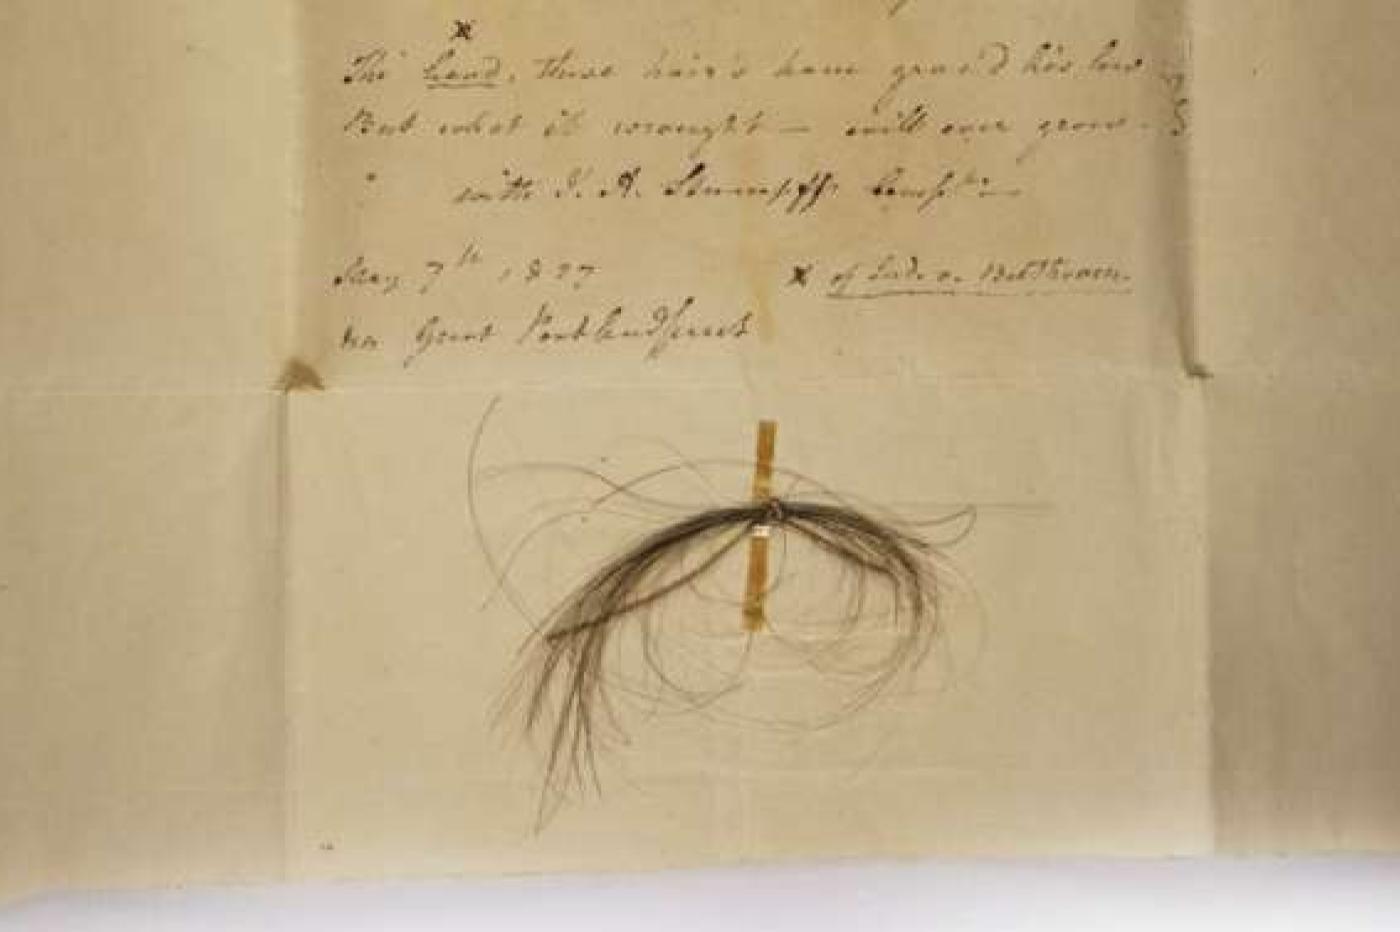 une mèche de cheveux ayant appartenu à Beethoven